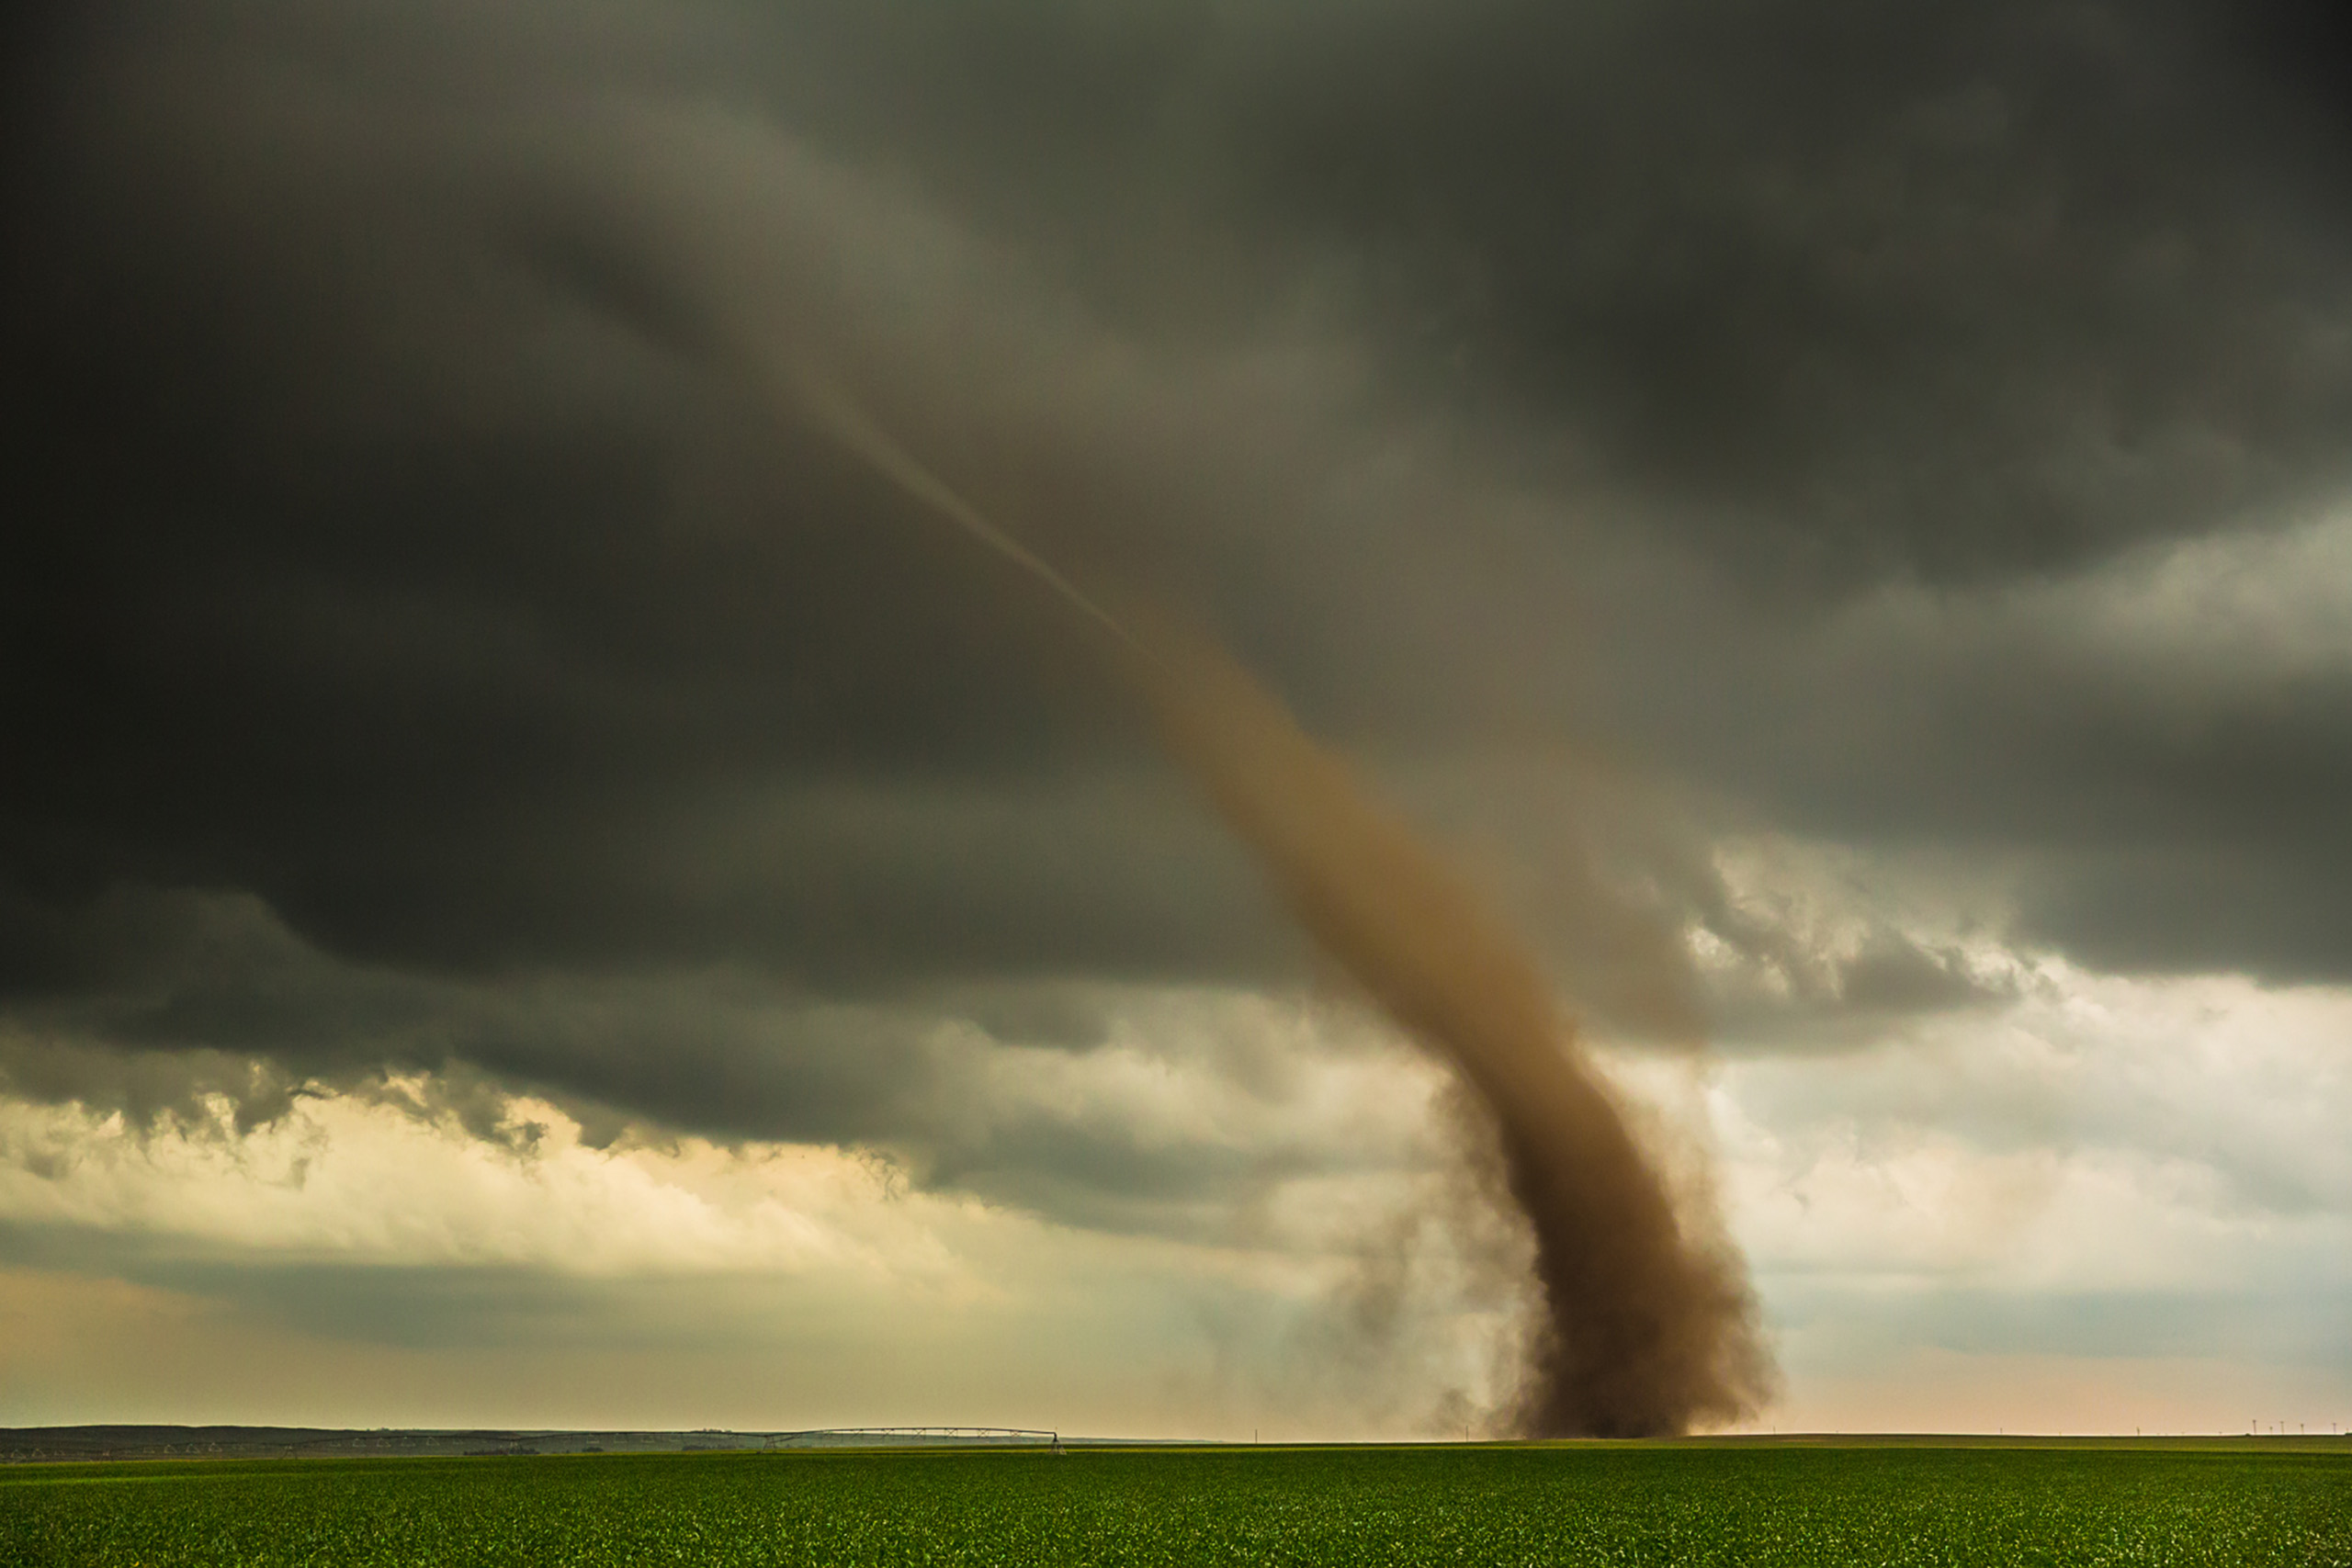 Tornado spinning up red topsoil near Dix, Nebraska.